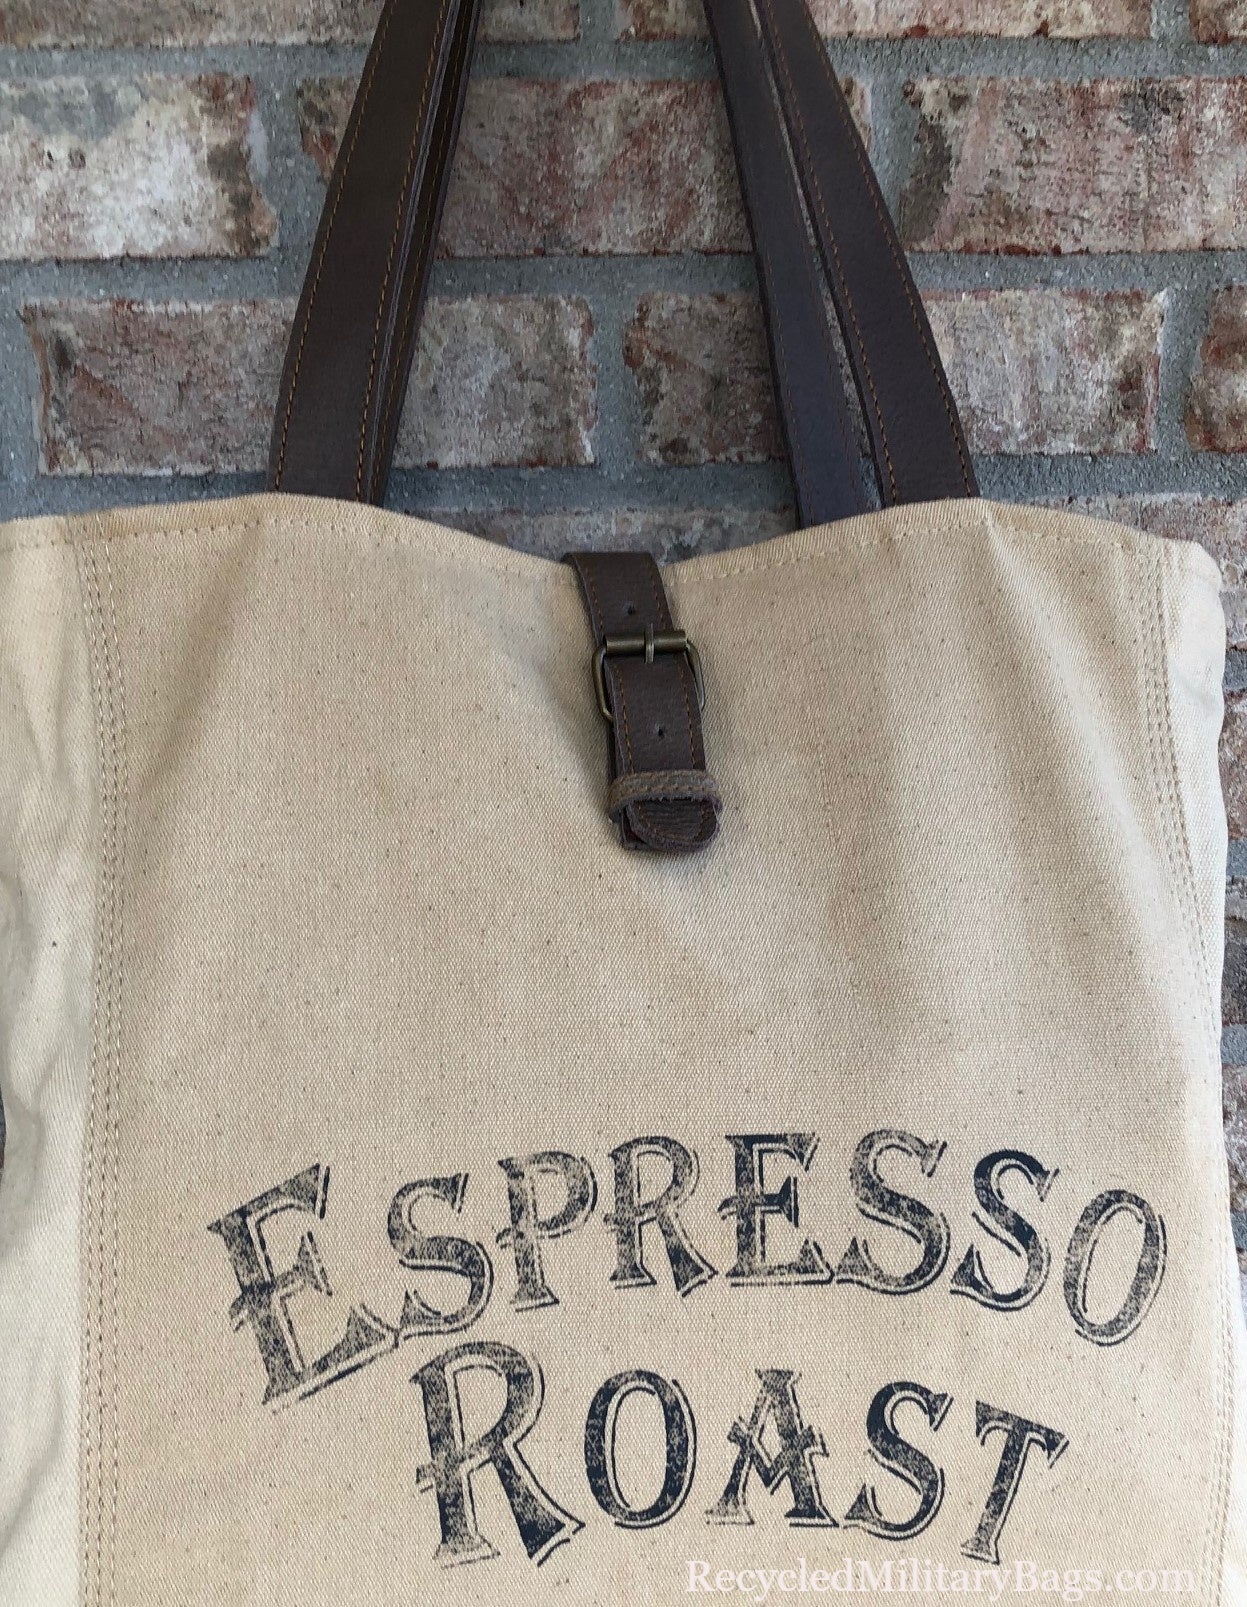 UpCycled Canvas Espresso Roast Shoulder Tote Bag